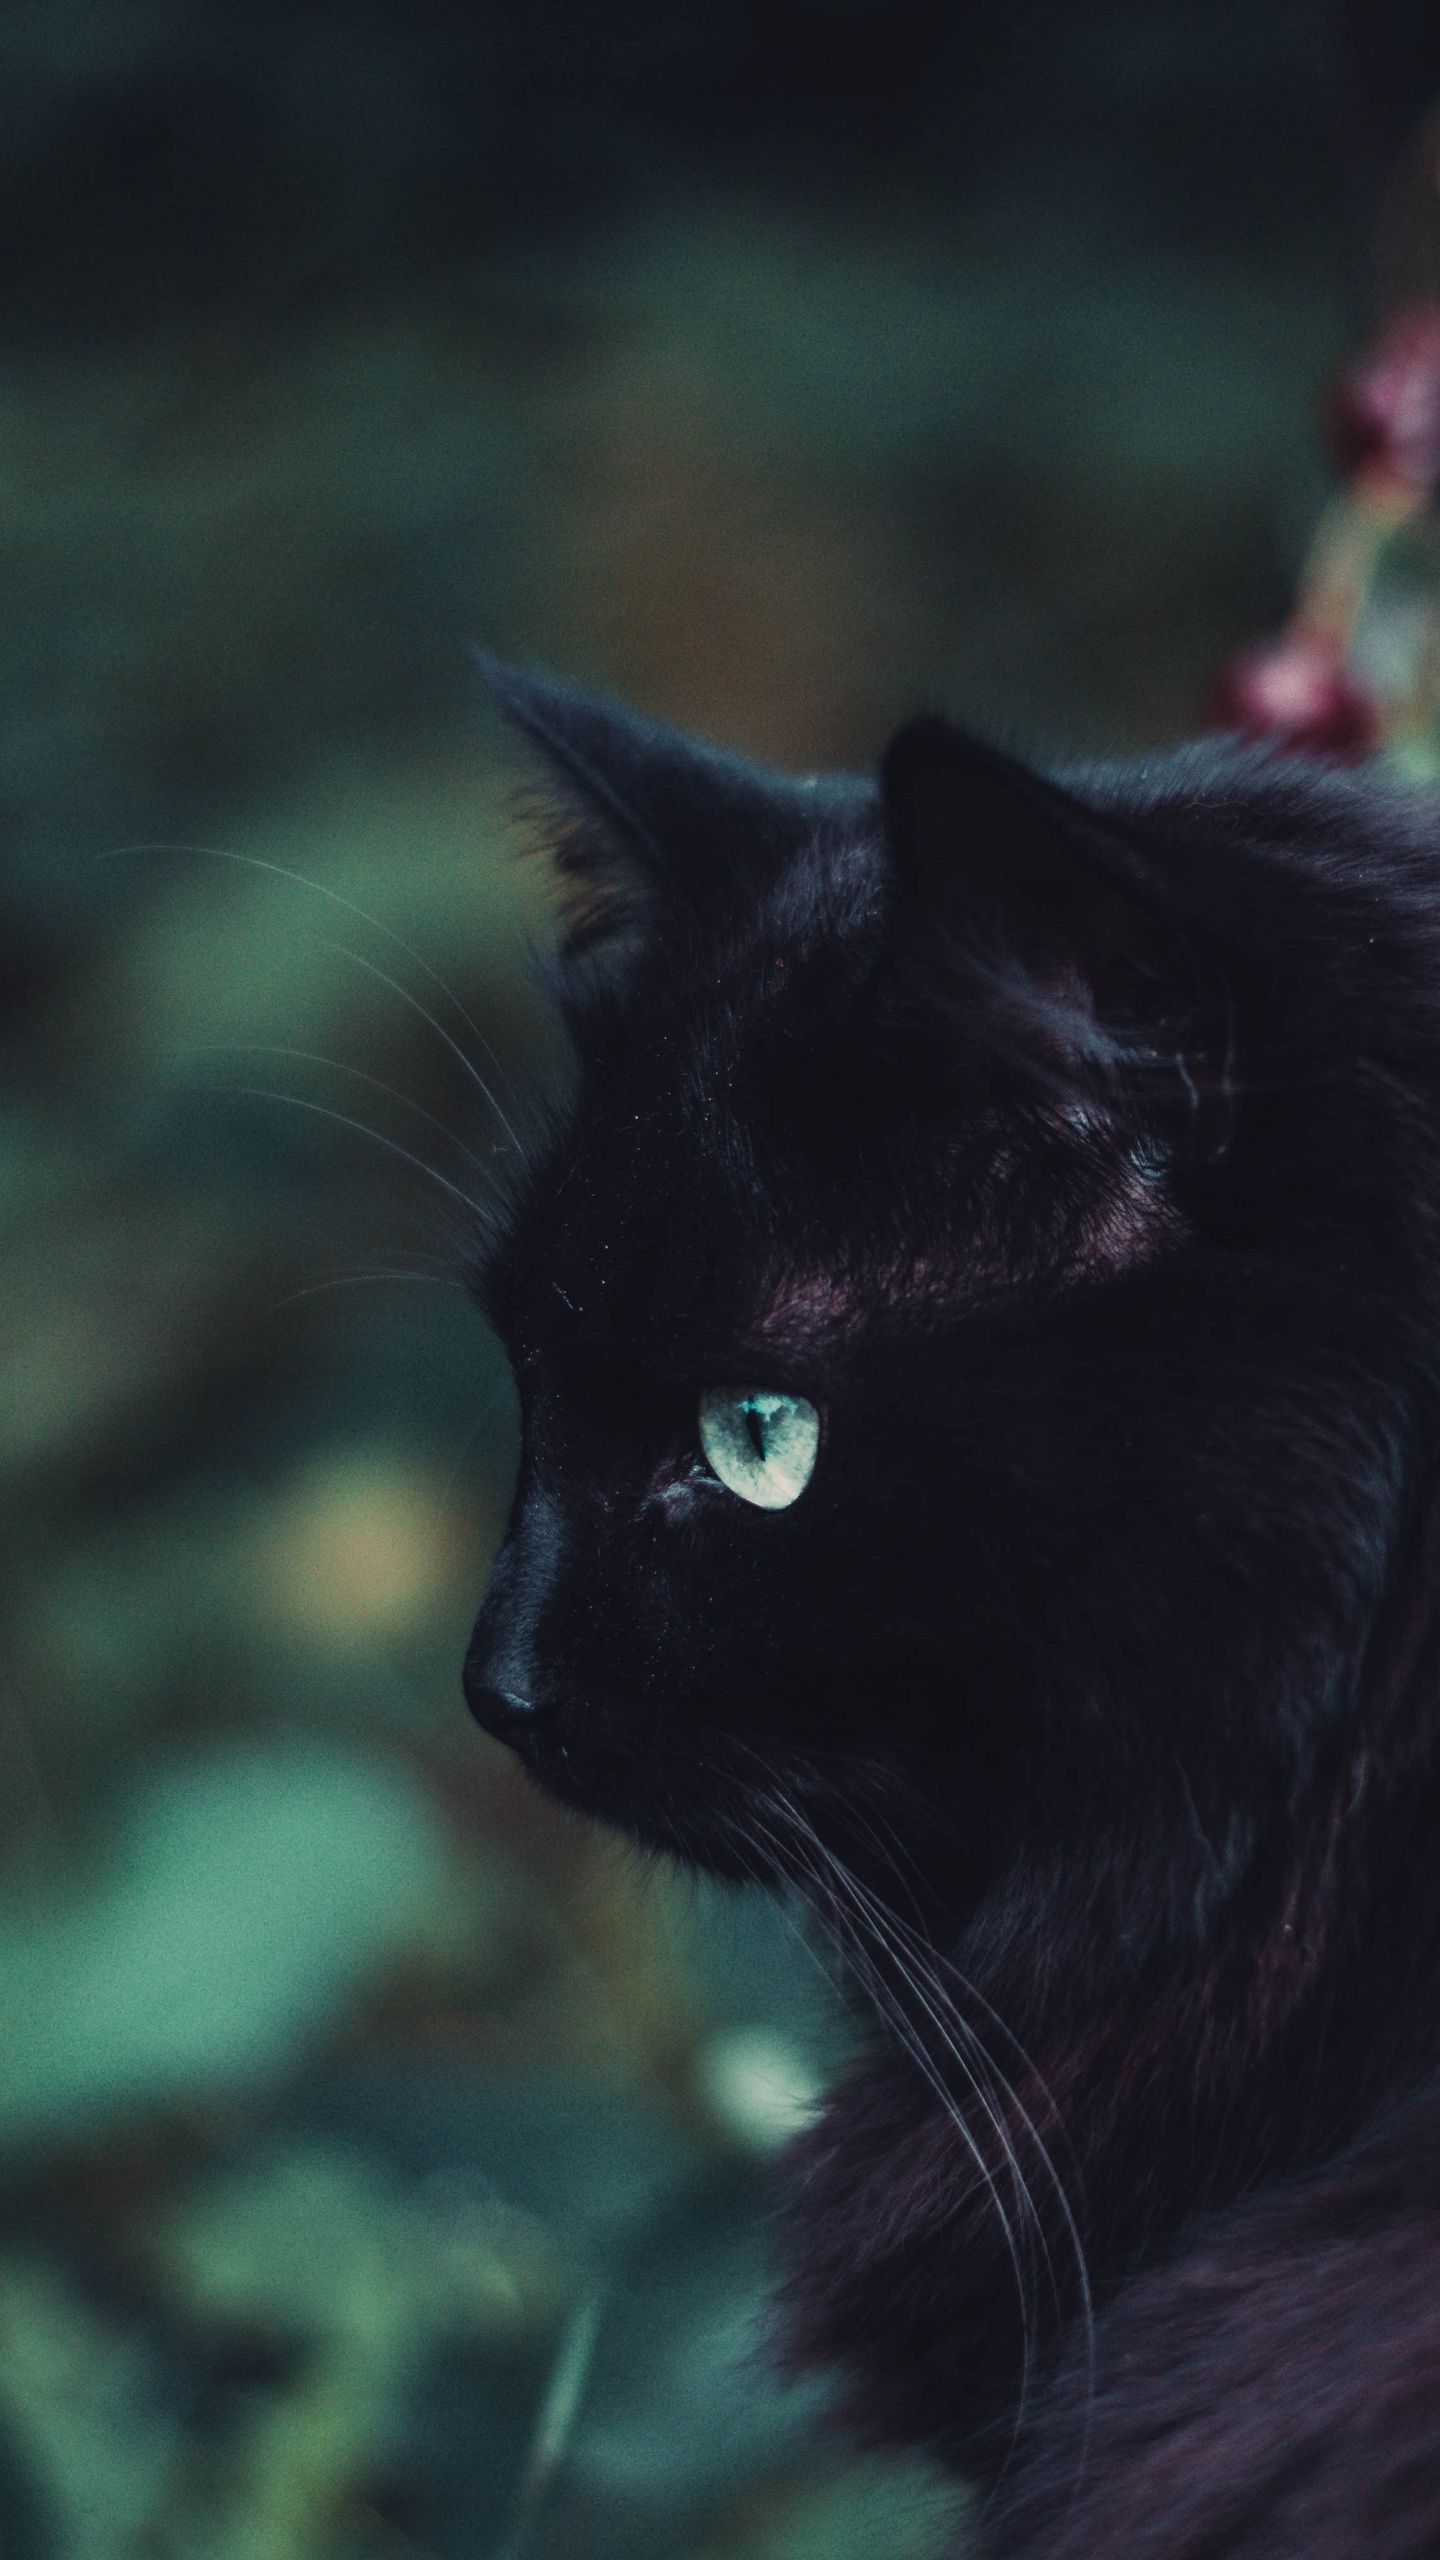 Black Cat Screensaver Wallpapers